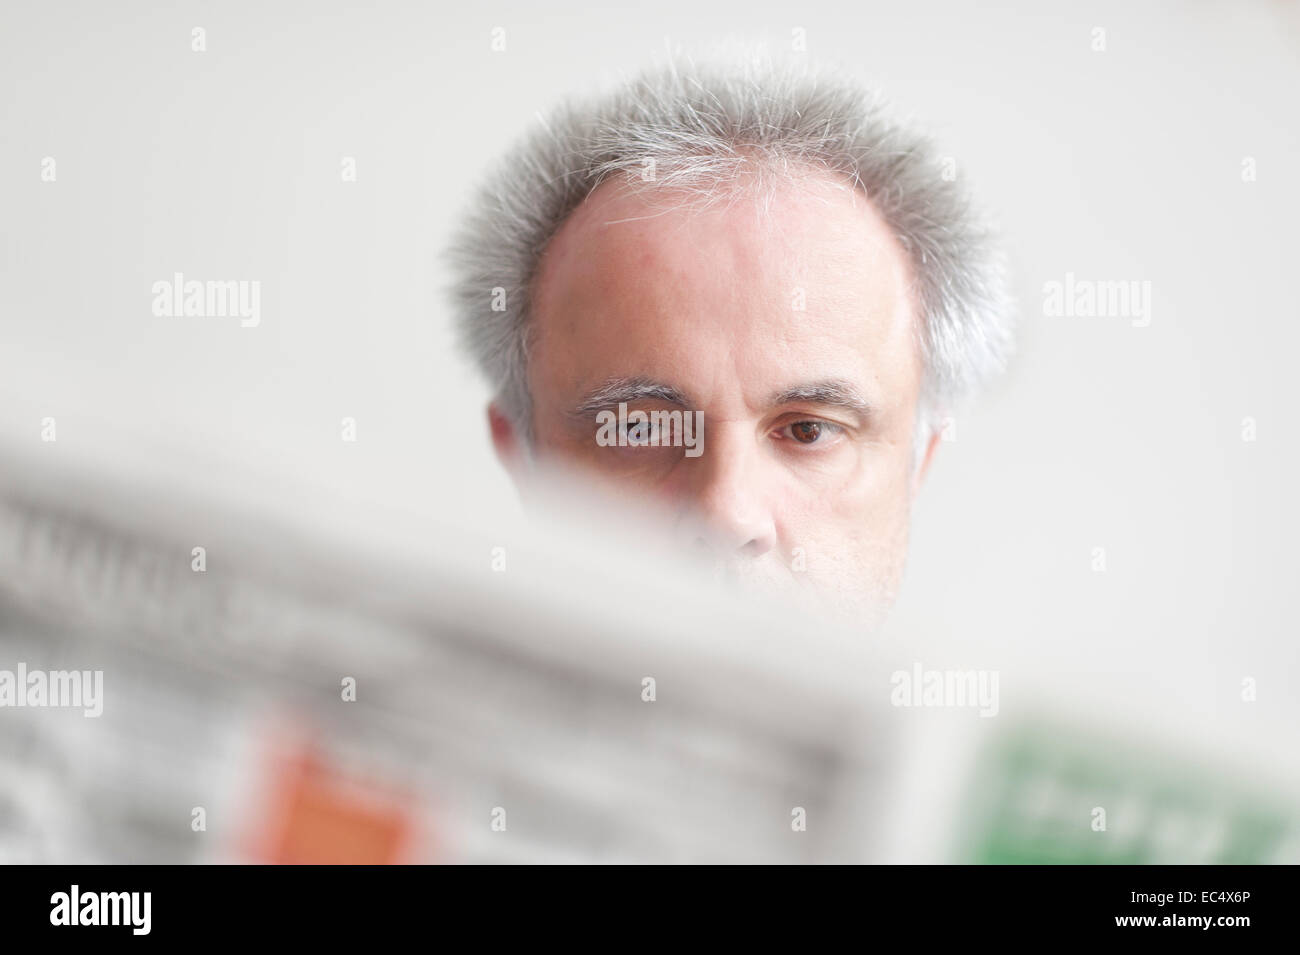 Un homme avec une expression faciale neutre reading a newspaper Banque D'Images